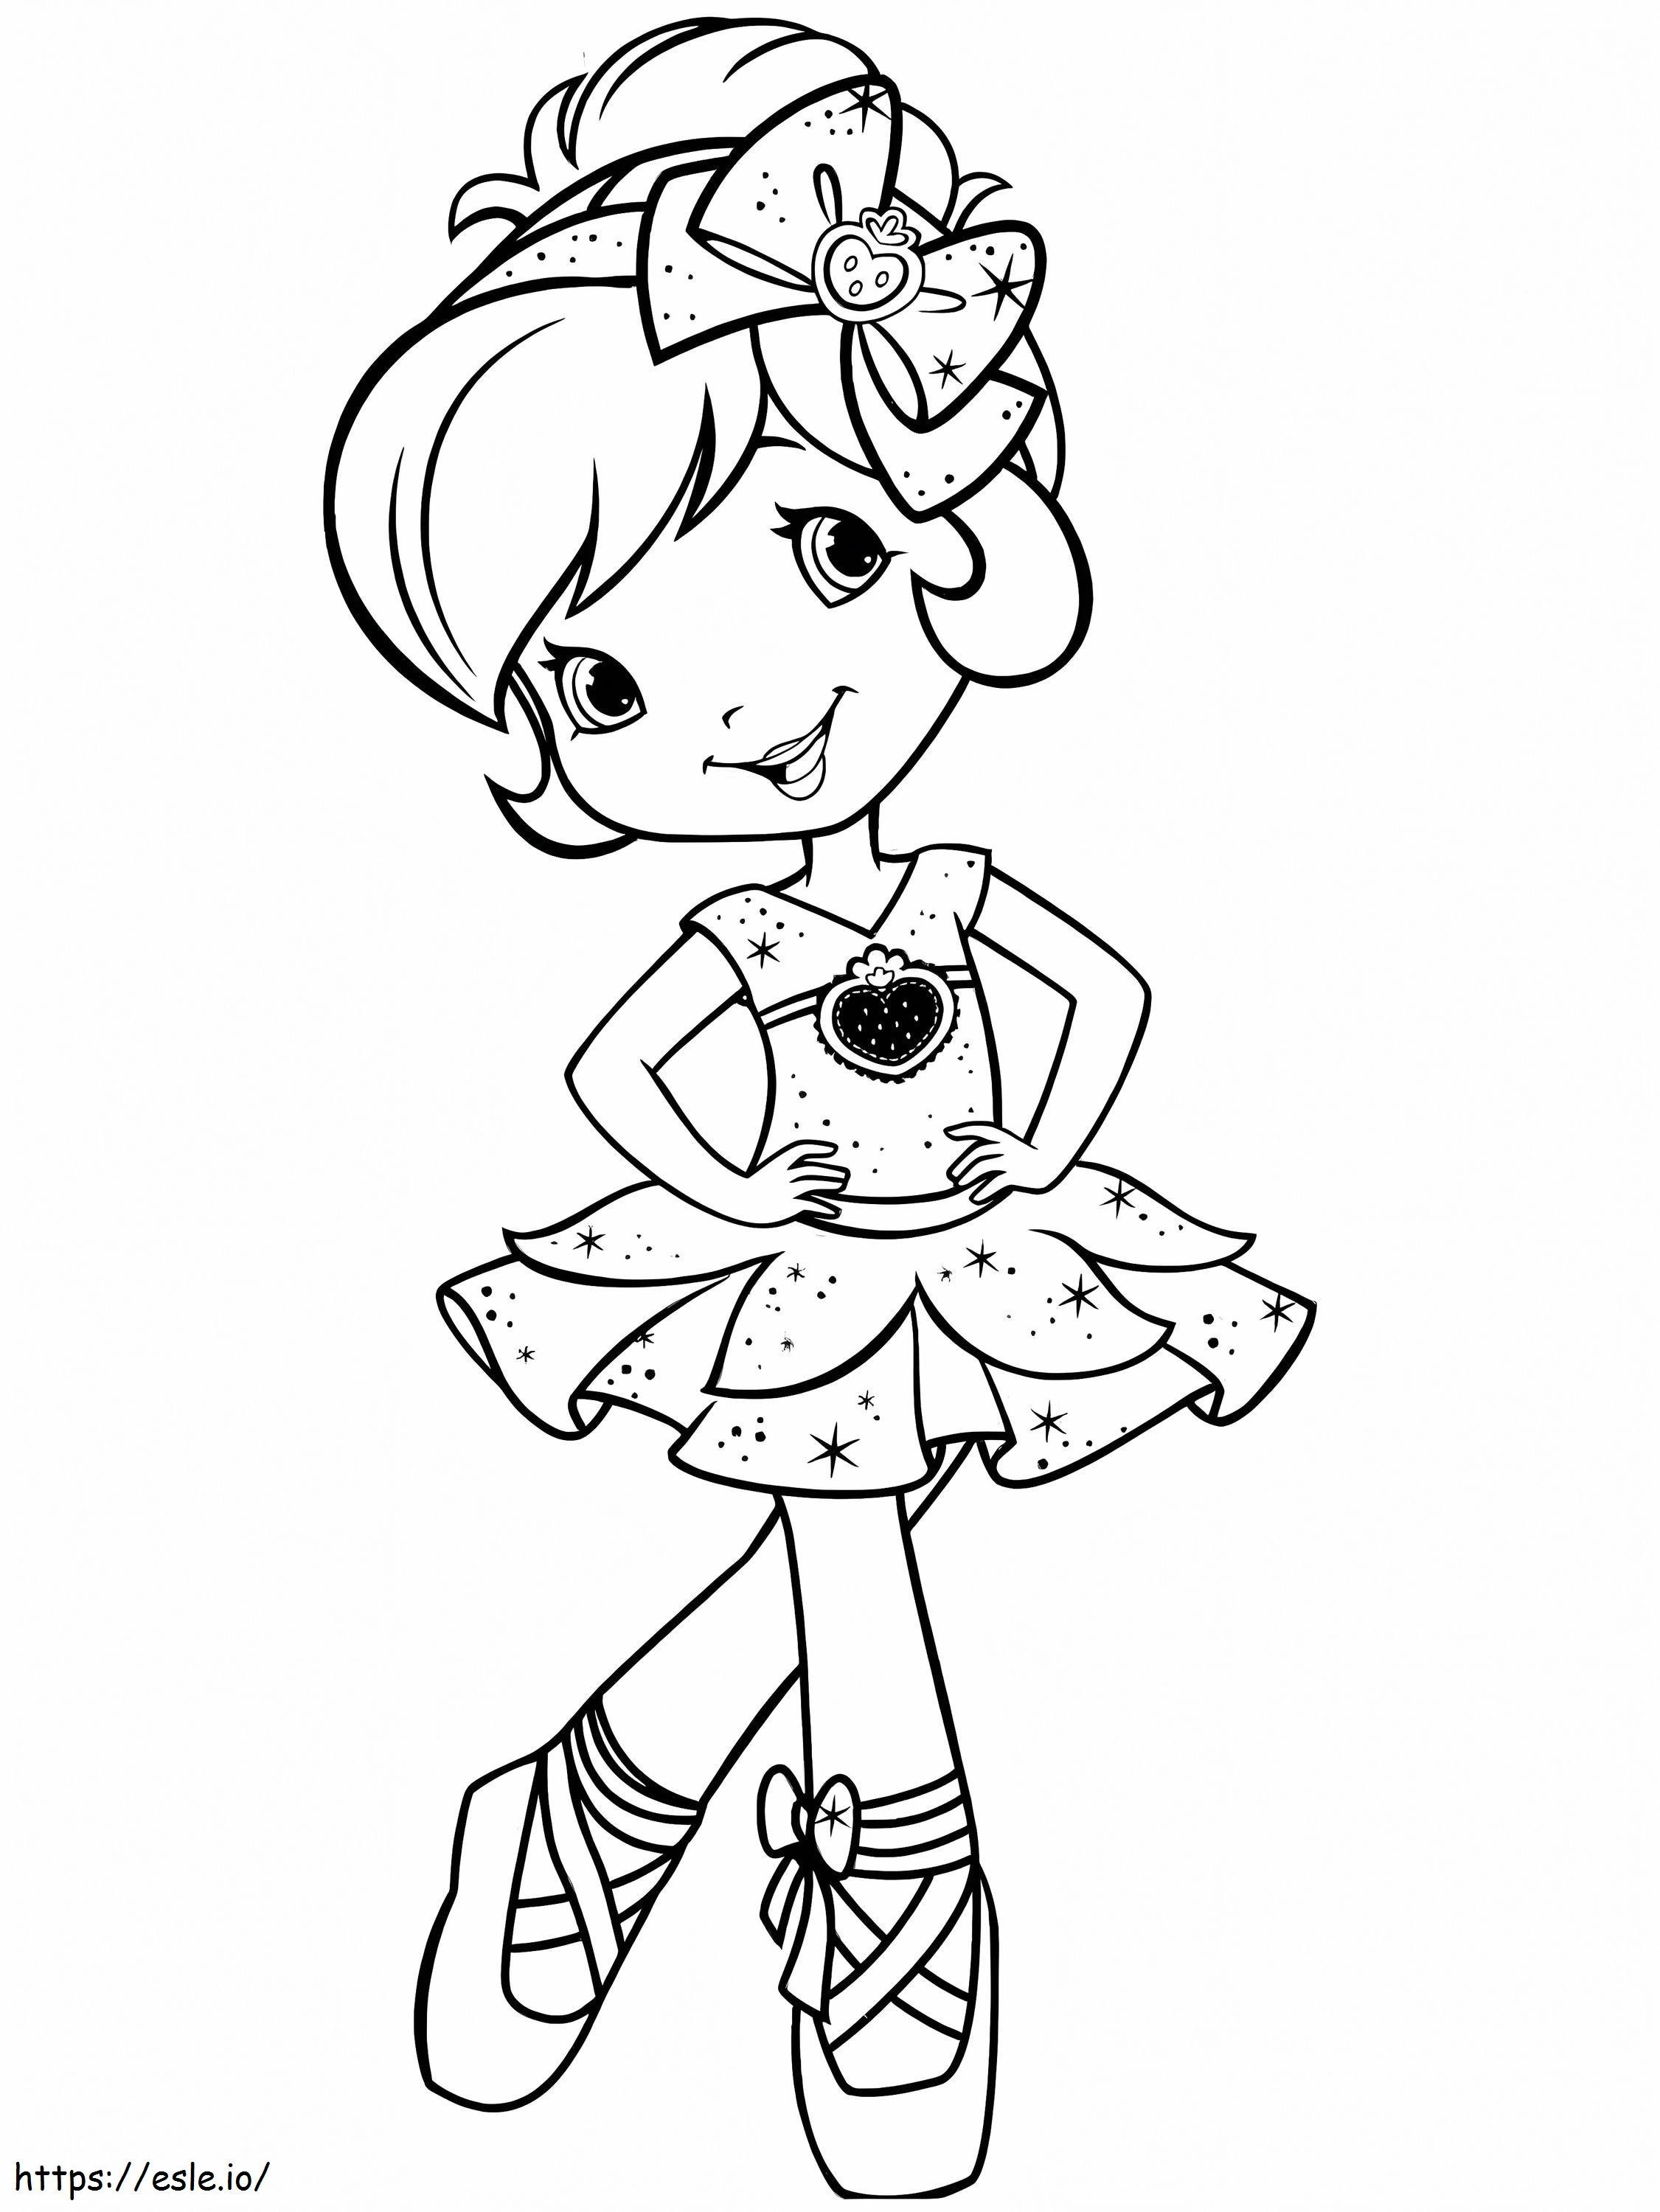 Erdbeer-Shortcake-Ballerina ausmalbilder